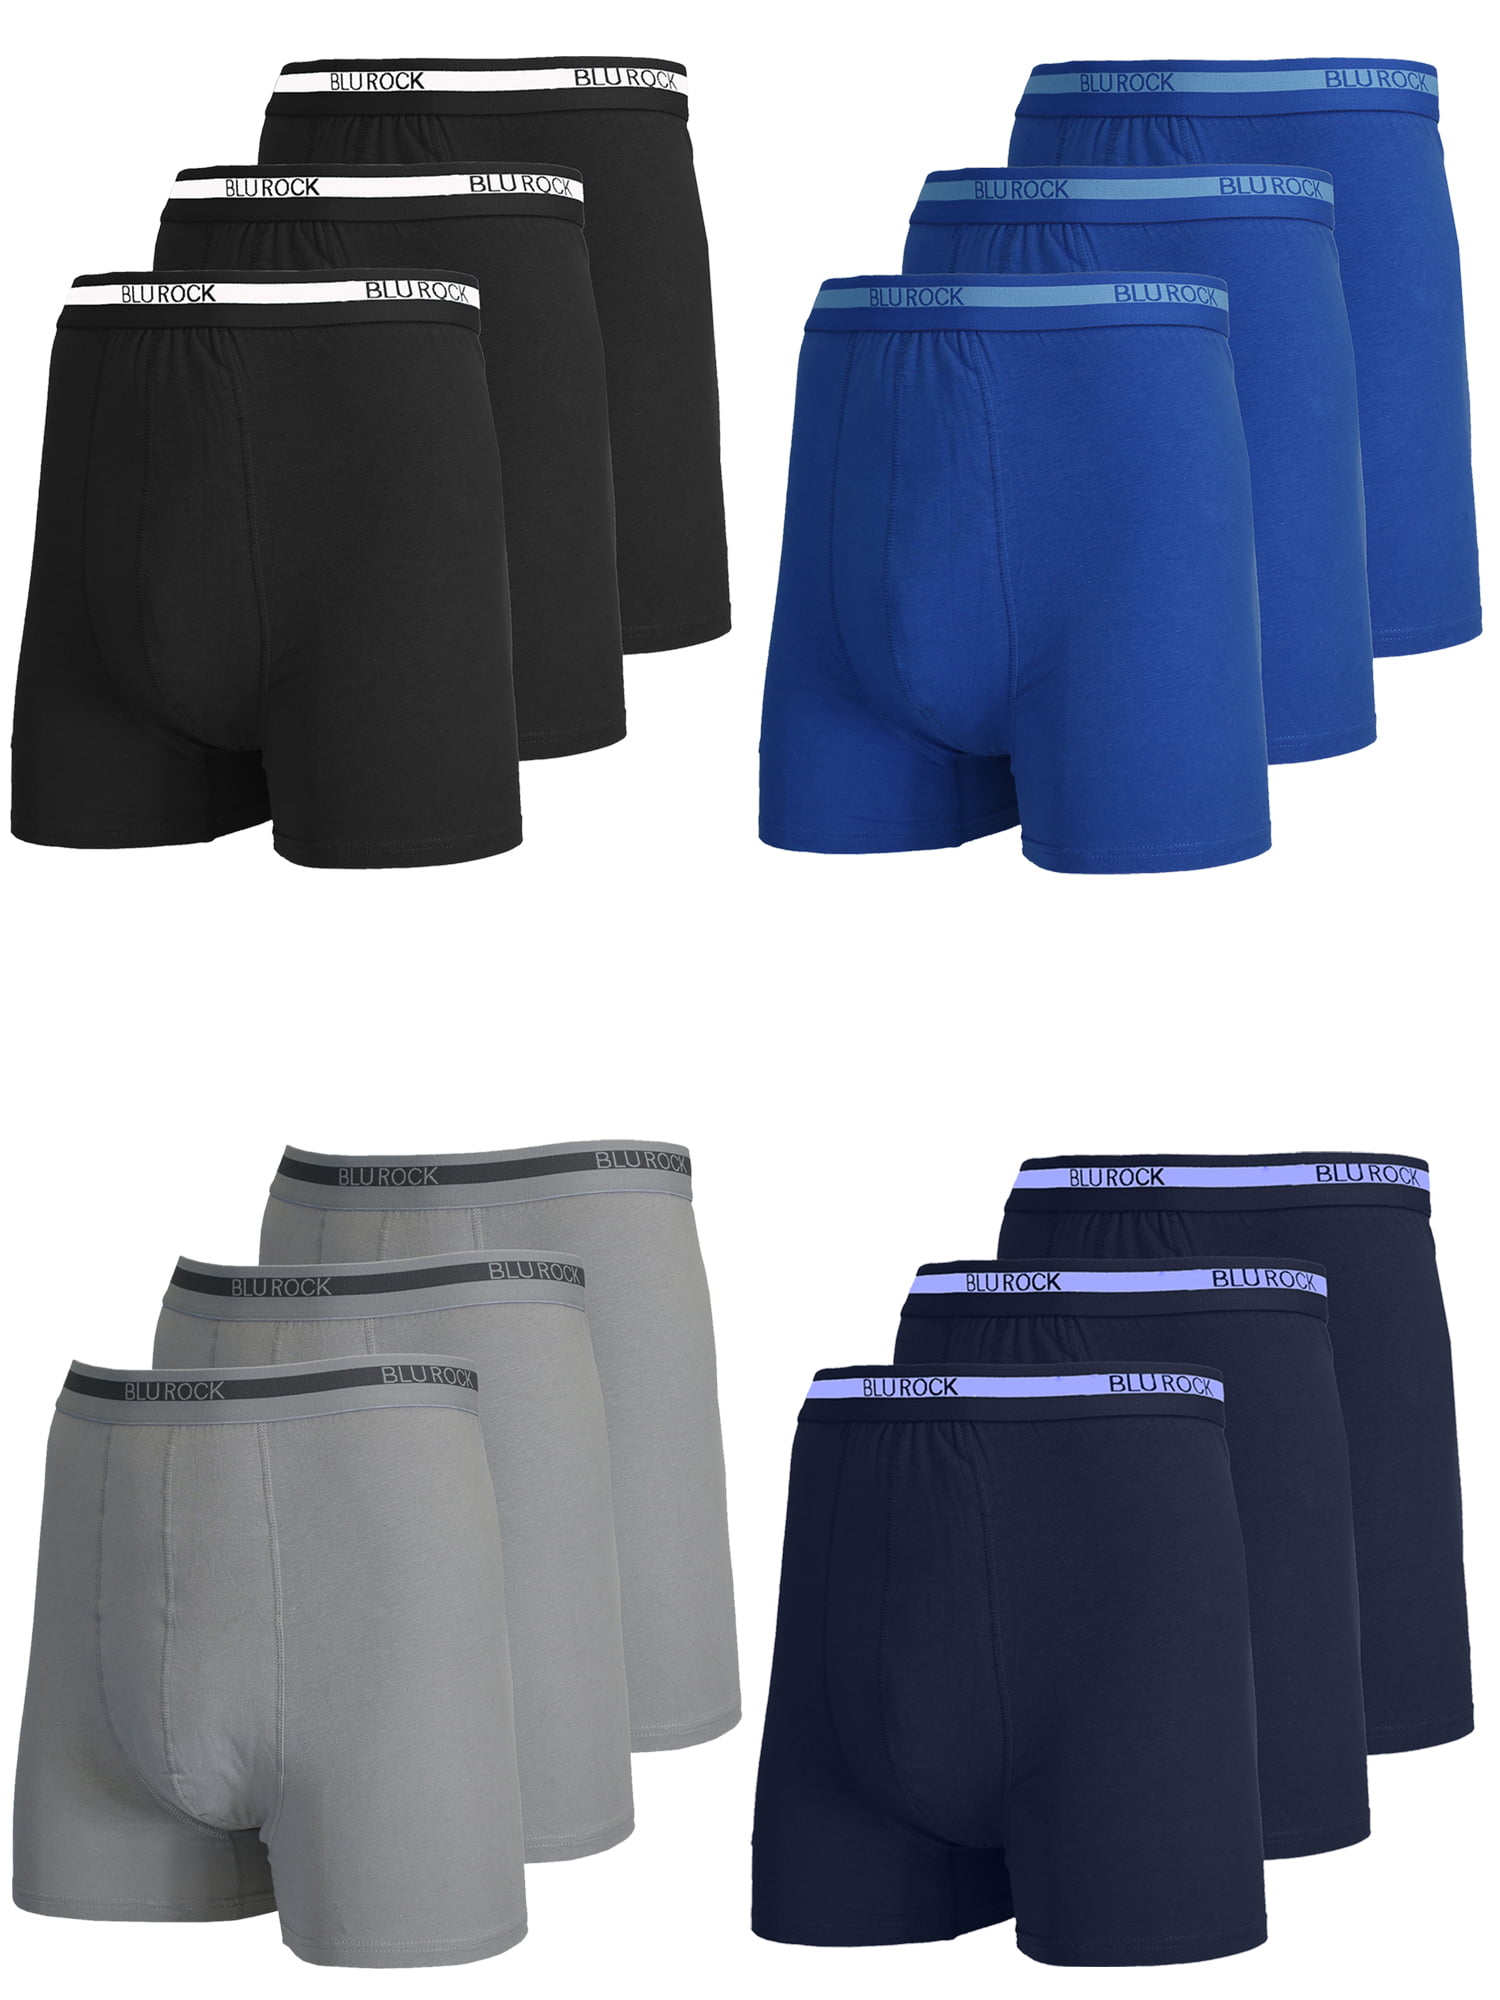 12-Pack Men's Stretch Cotton Boxer Briefs (Sizes, S-2XL) - Walmart.com